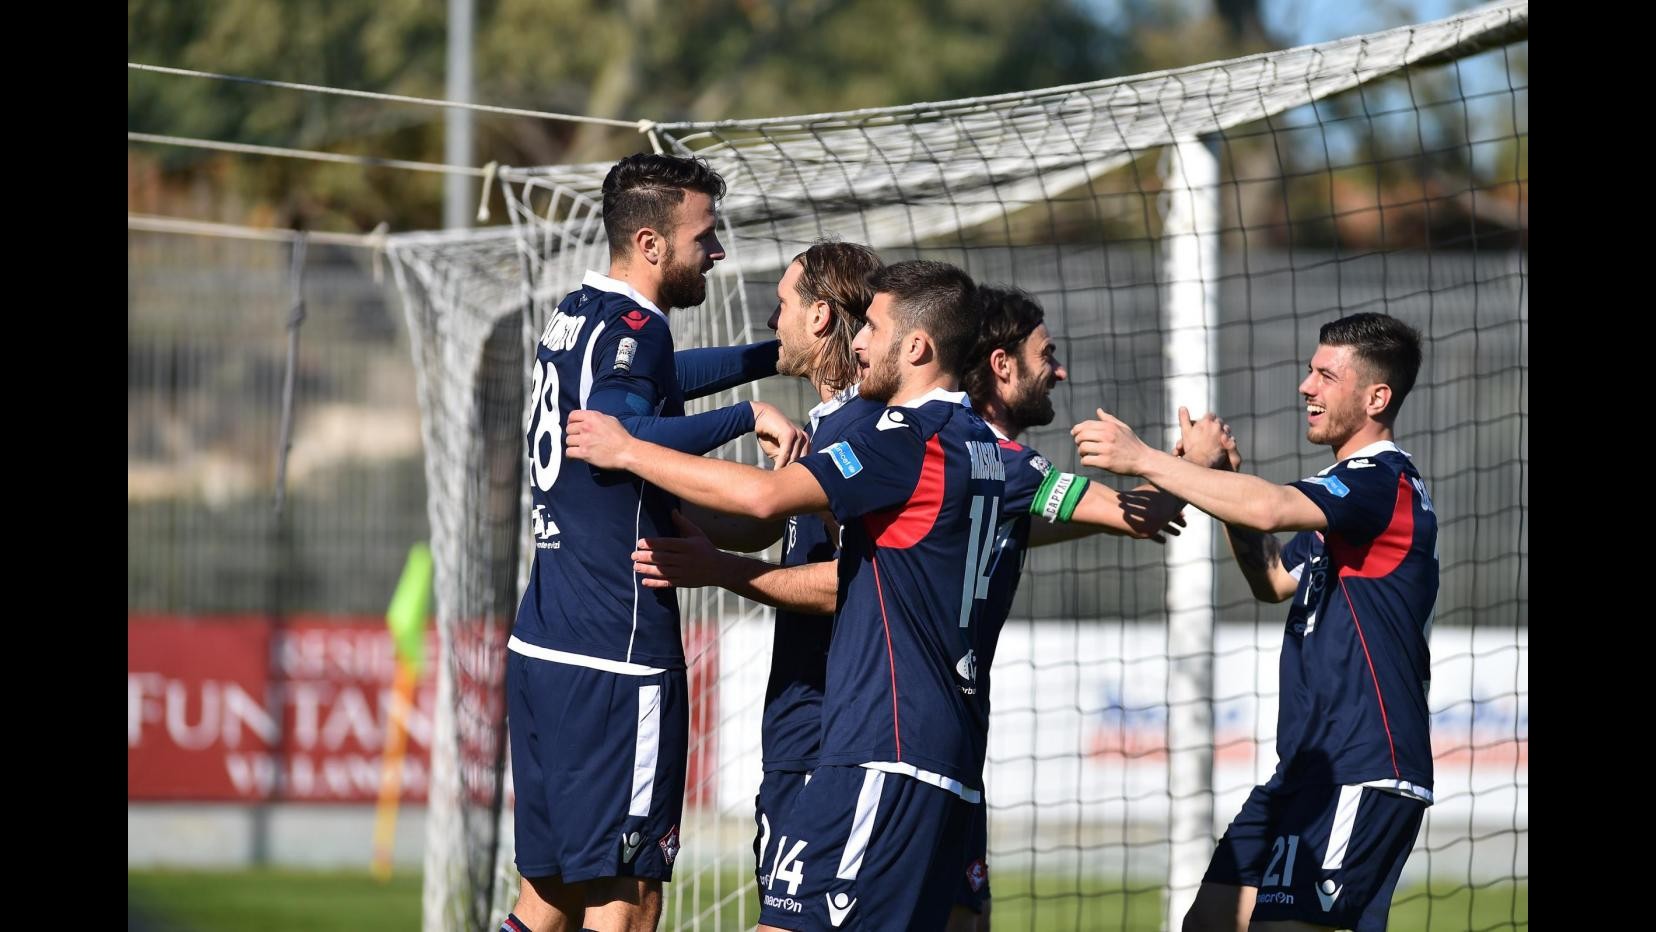 FOTO Lega Pro, Olbia-Piacenza 1-3